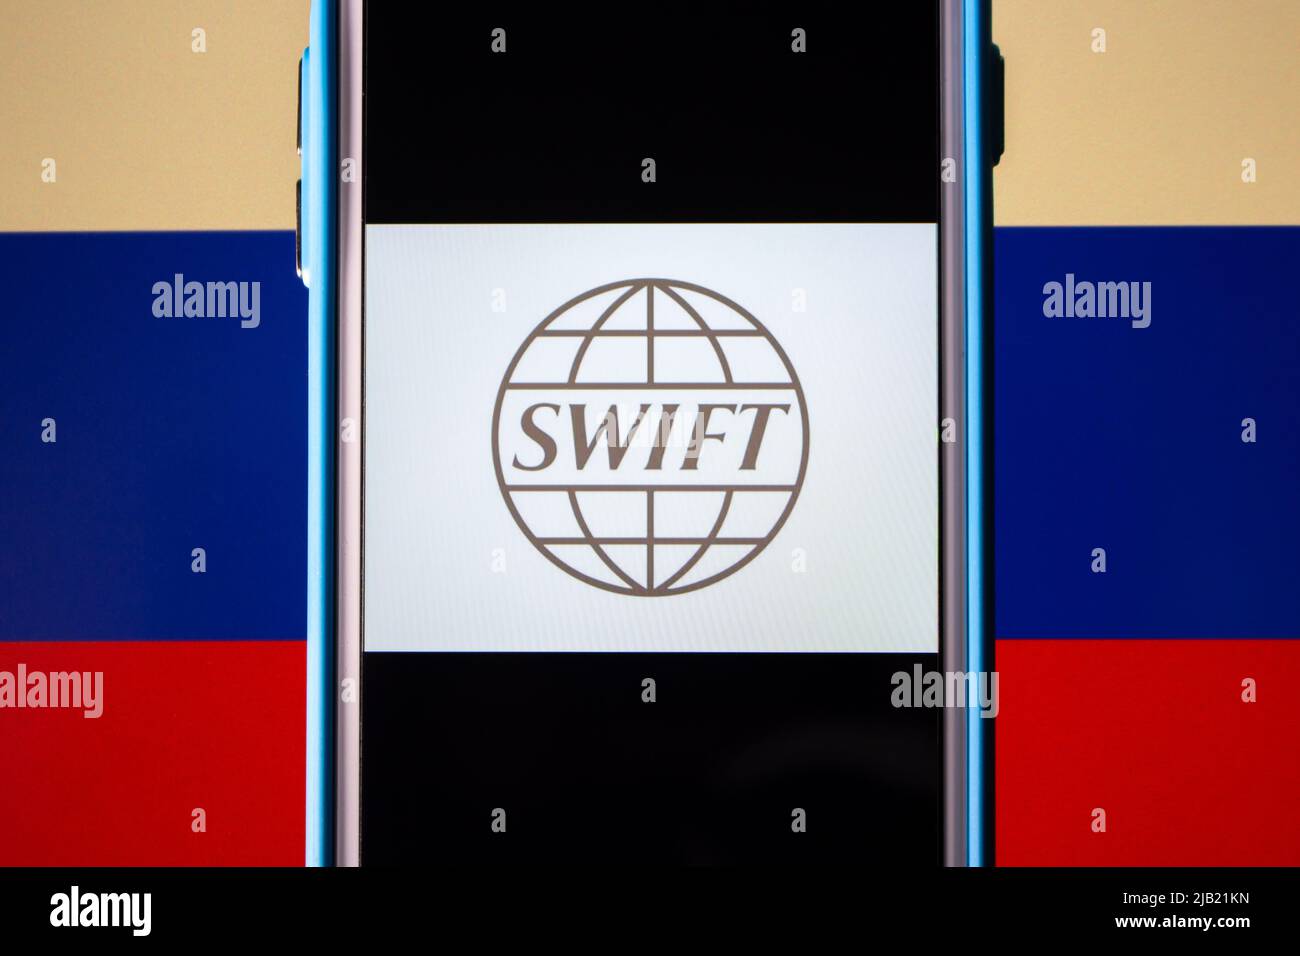 Logo de SWIFT (Société mondiale de télécommunications financières interbancaires) sur iPhone, drapeau russe. Sanctions pour l'invasion de l'Ukraine concept Banque D'Images